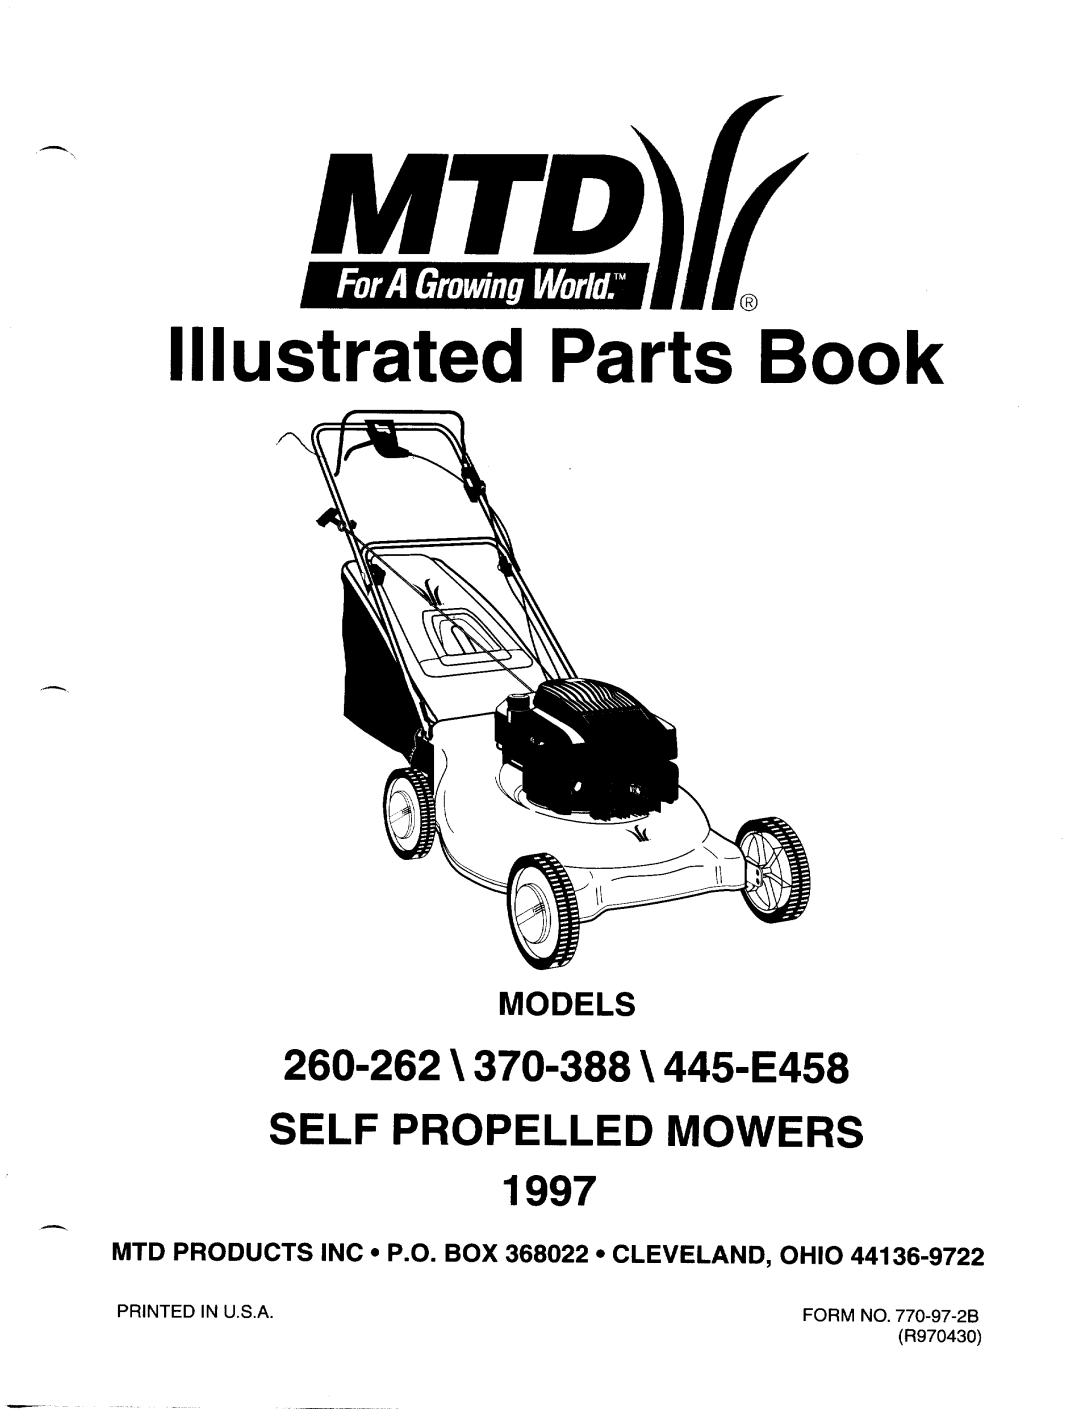 MTD 370-388, 445-E458, 260-262 manual 